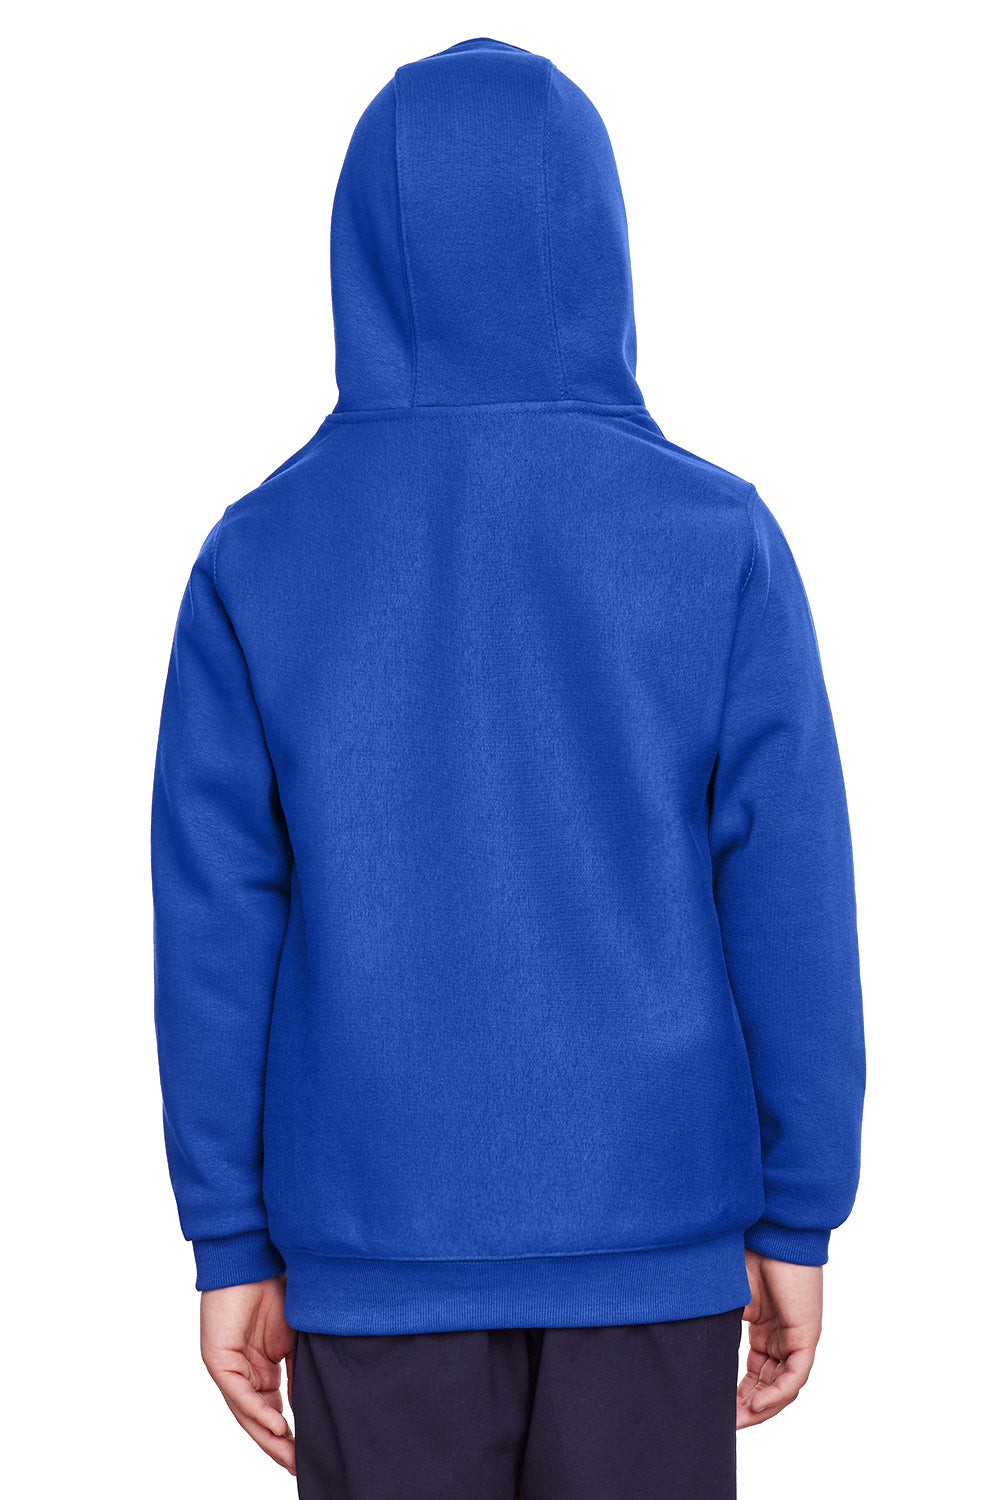 Team 365 TT96Y Youth Zone HydroSport Fleece Water Resistant Hooded Sweatshirt Hoodie Royal Blue Back